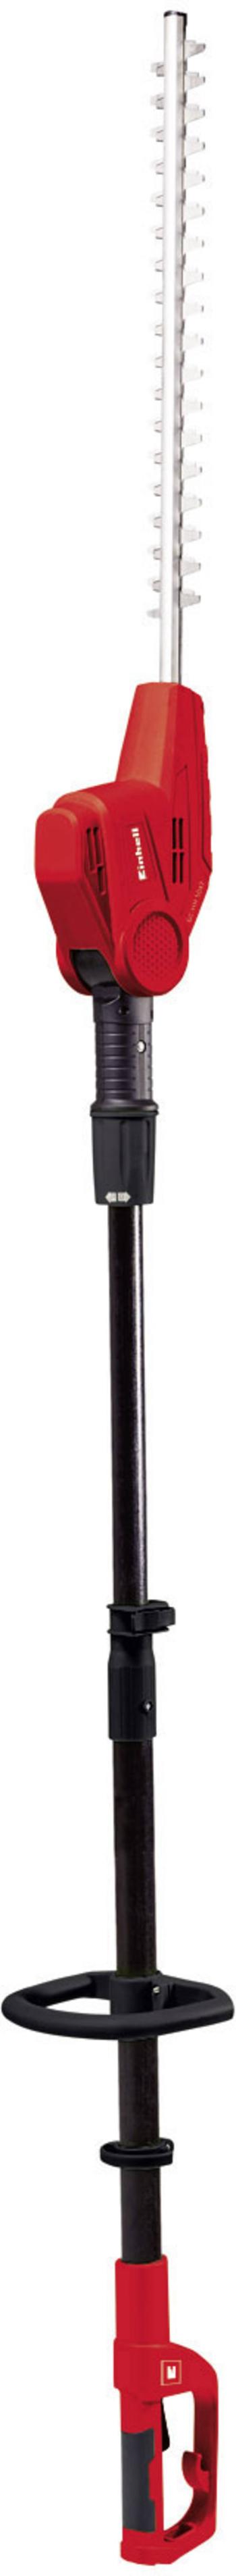 Einhell GC-HH 5047 elektrický/á teleskopické nožnice na živý plot nosný popruh 500 W   585 mm